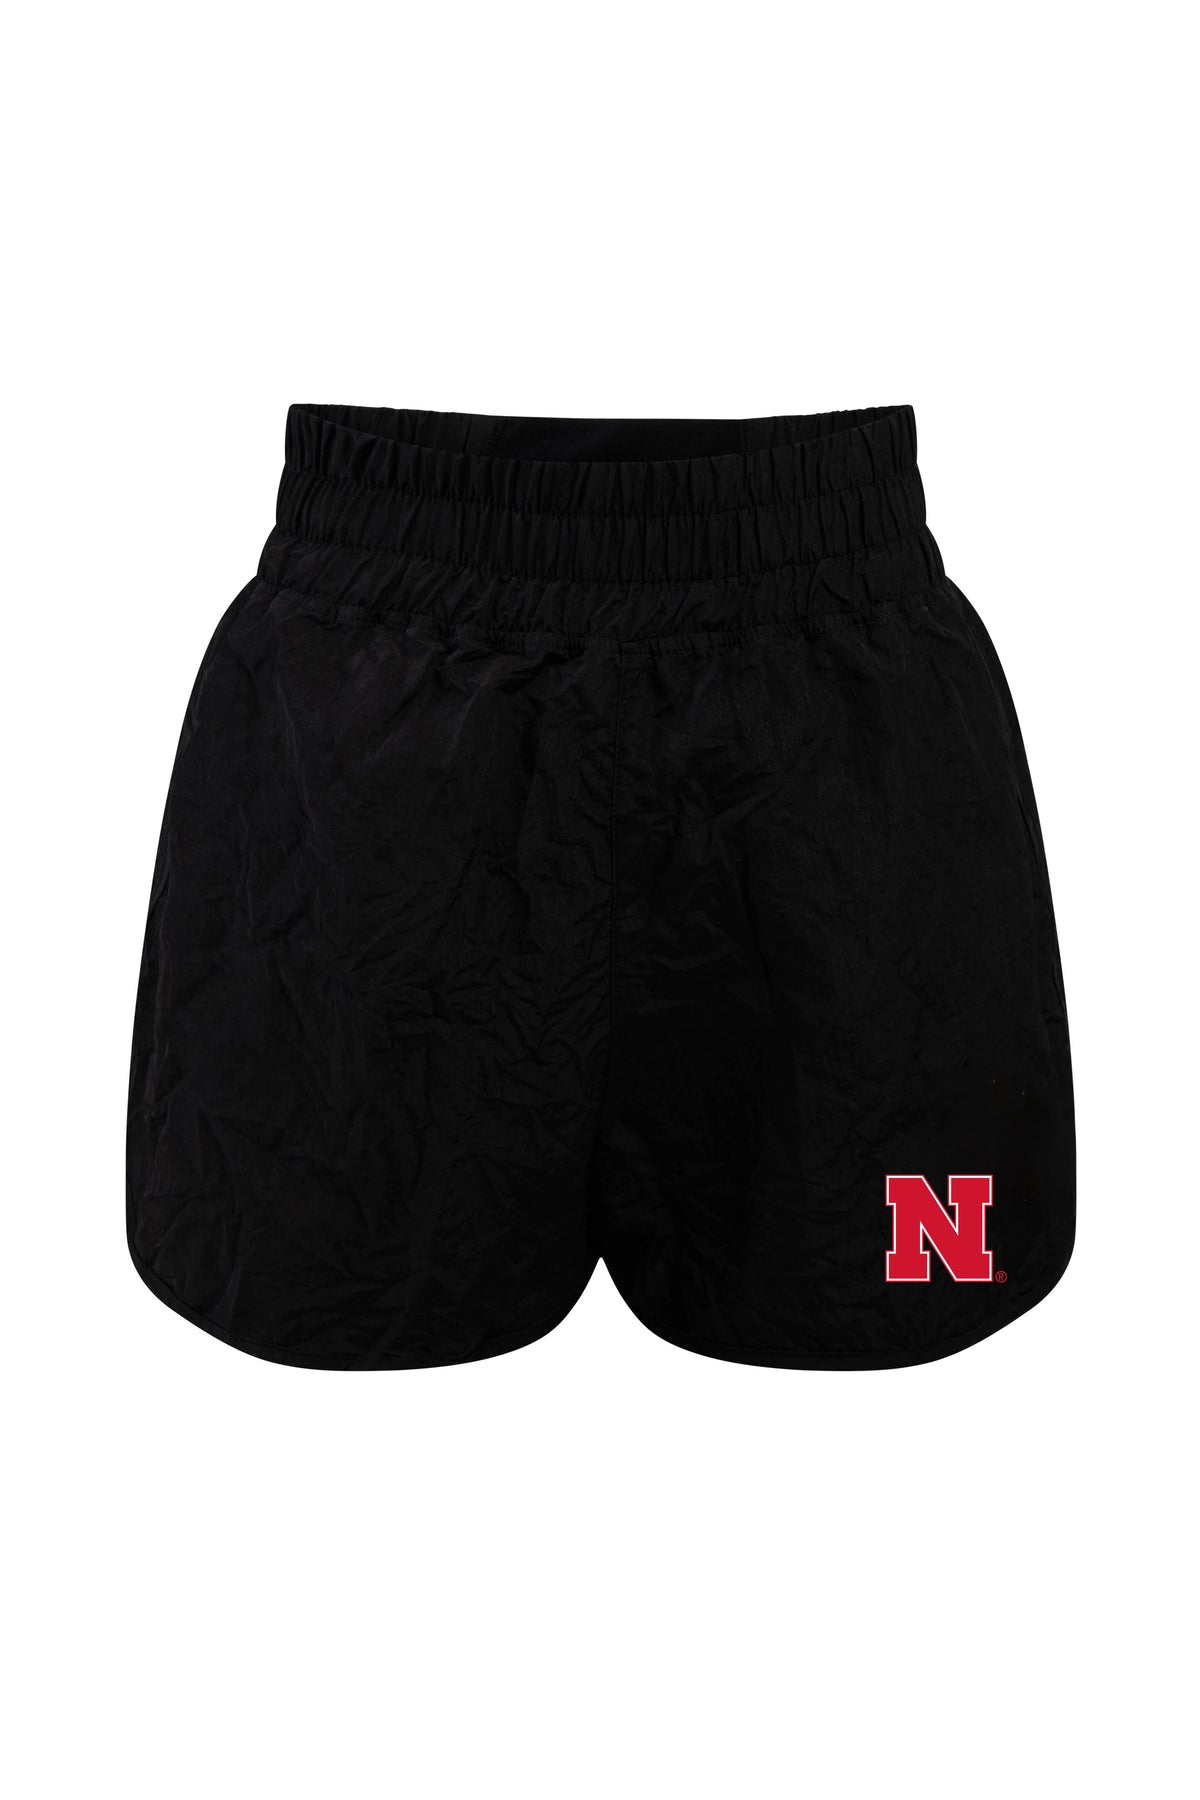 University of Nebraska Boxer Short